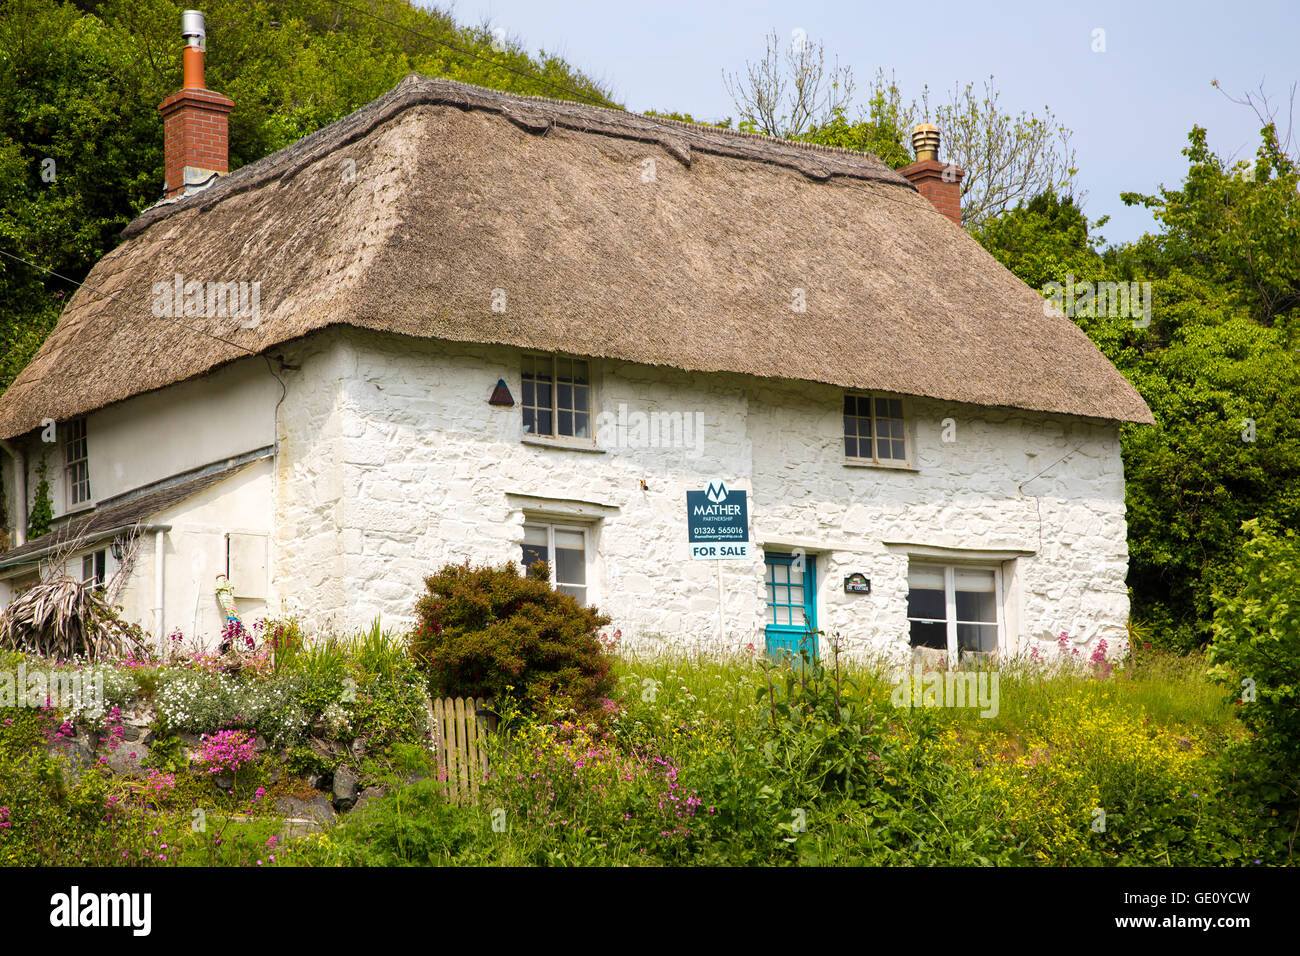 Joli Cottage blanchis à la chaume maison à vendre, Porthoustock, Péninsule du Lézard, Cornwall, England, UK Banque D'Images